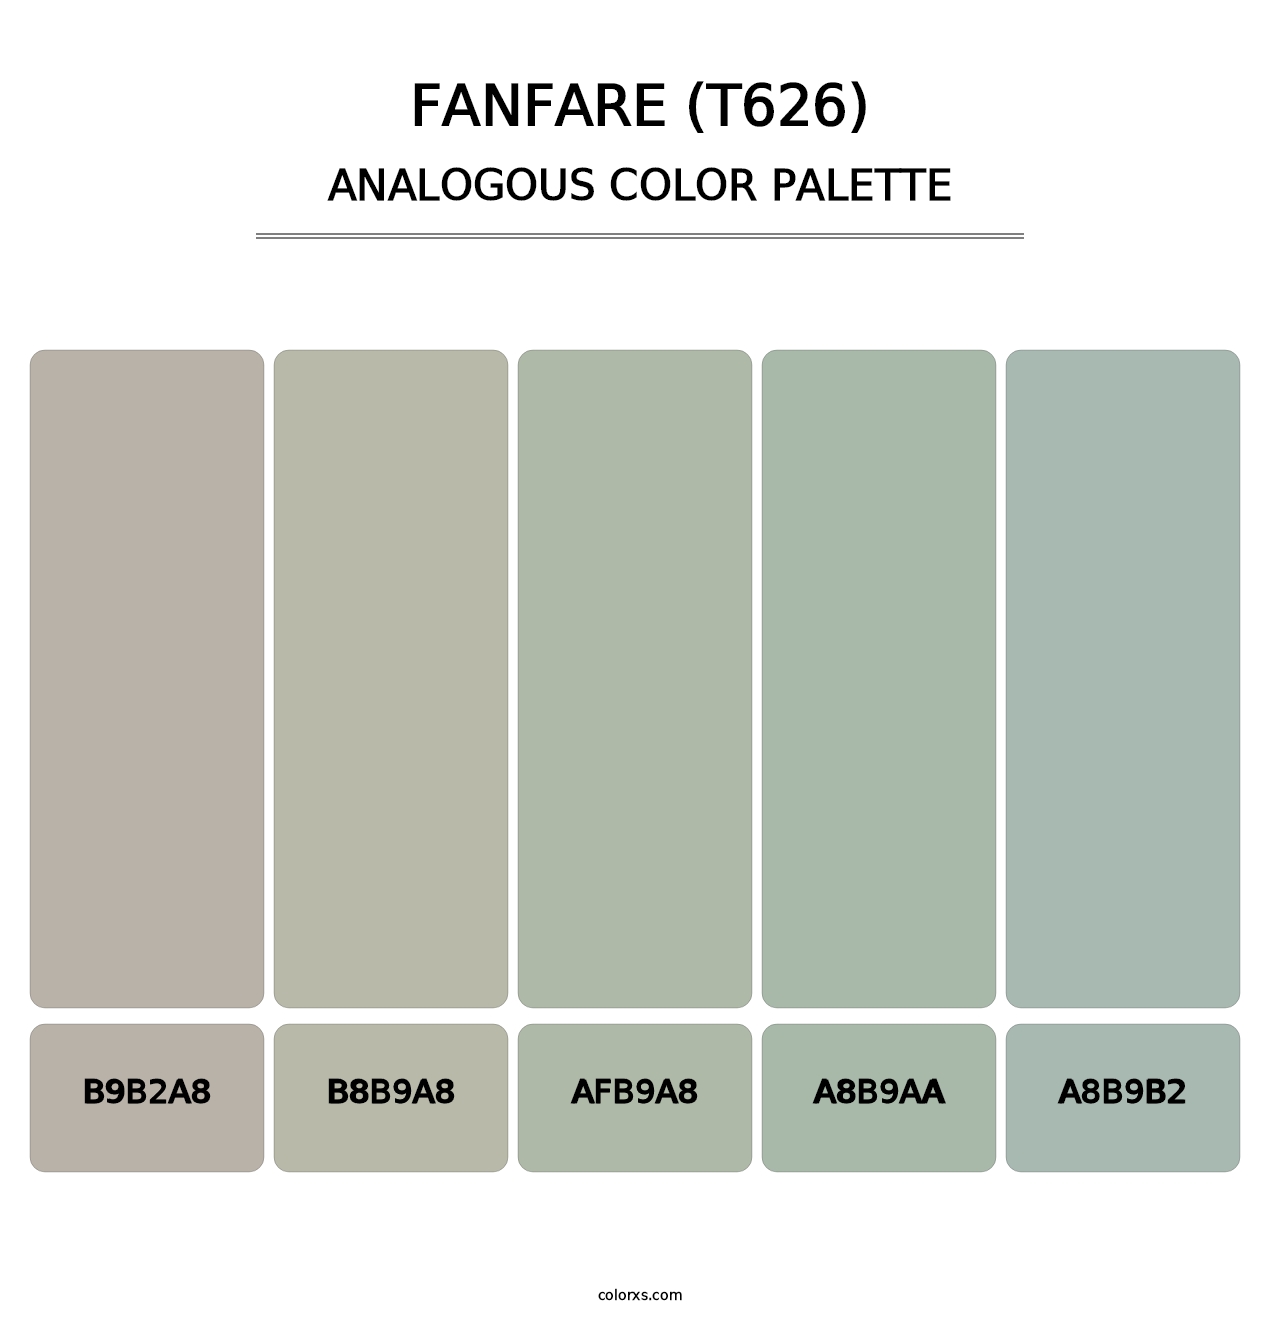 Fanfare (T626) - Analogous Color Palette